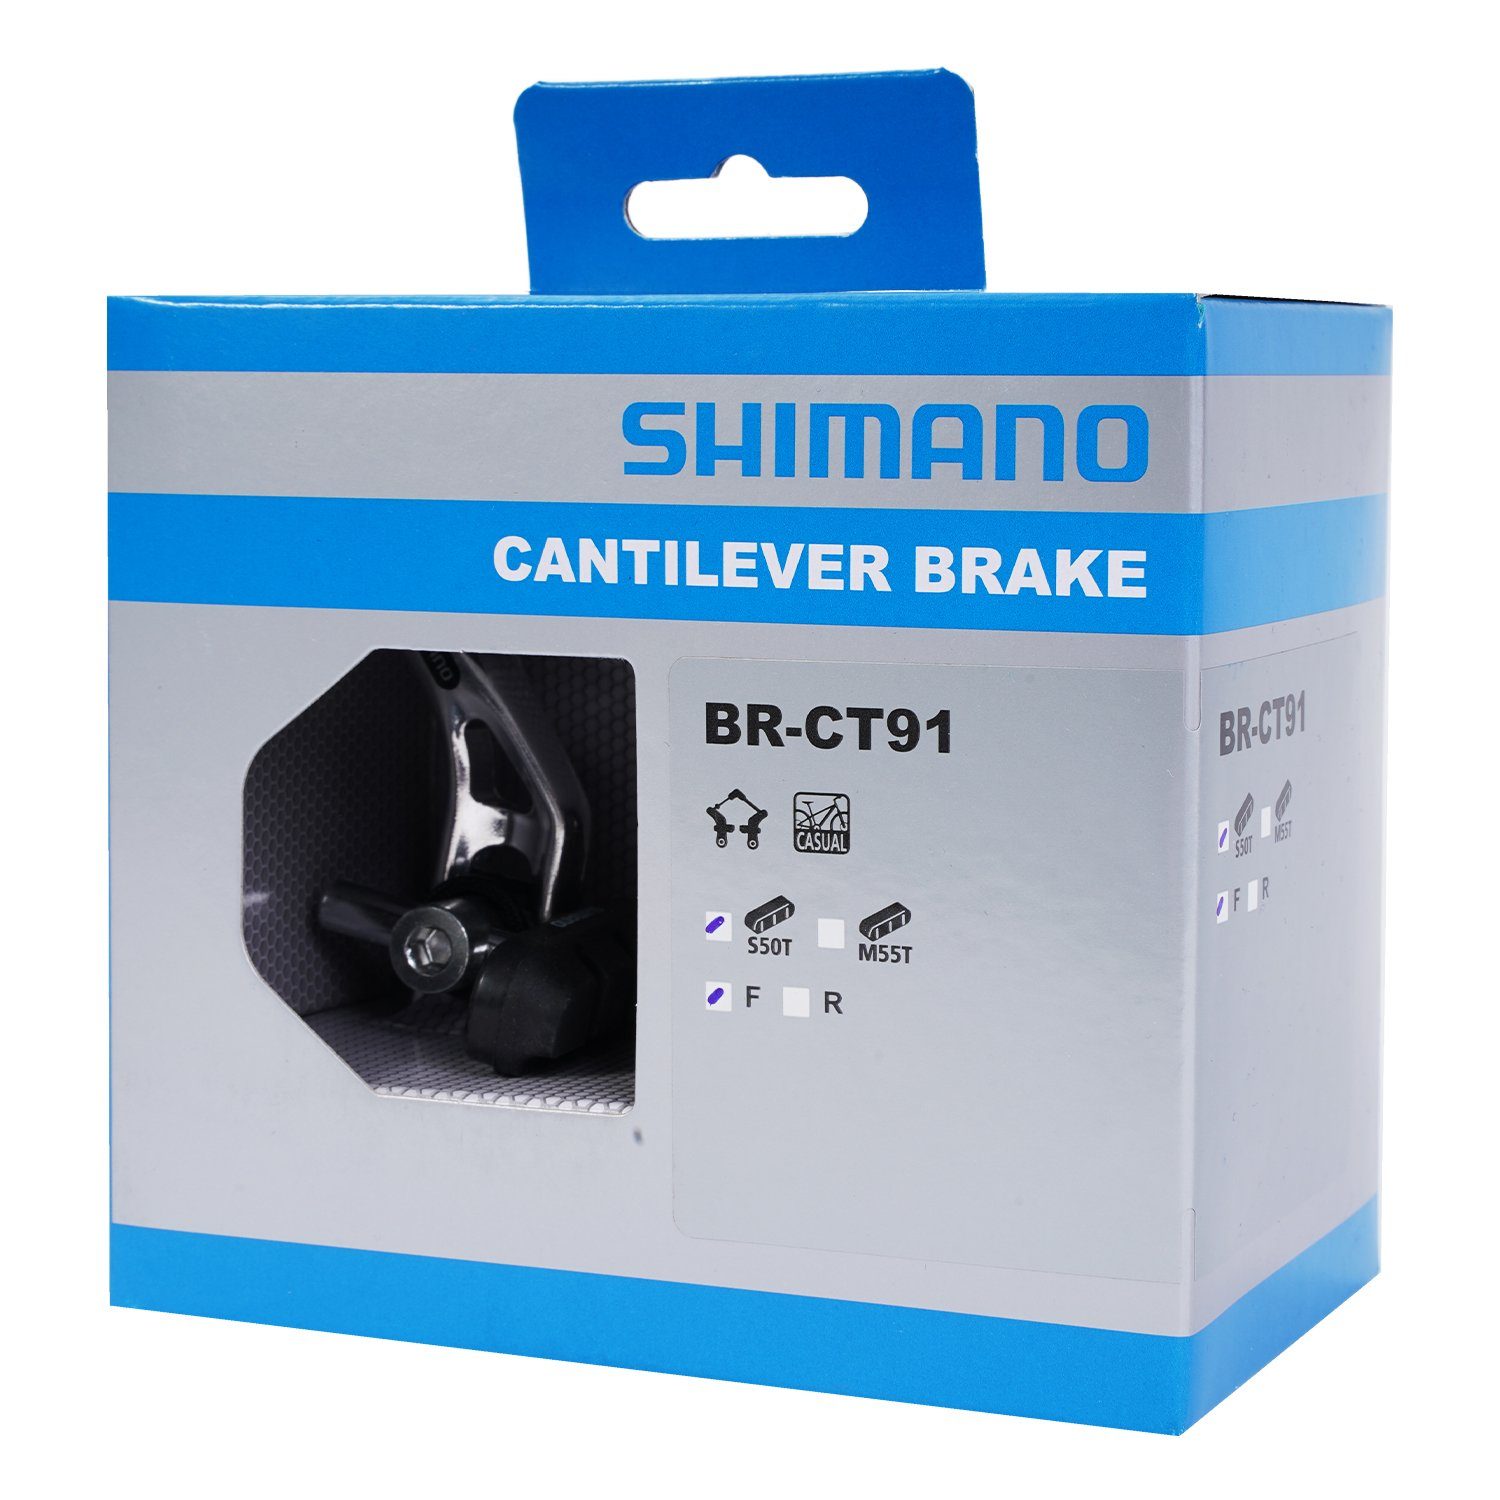 mit Bremsen Shimano VR Cantilever-Bremse BR-CT91 Canit-Lever Fahrradsattel Vorne Bremsbelag,